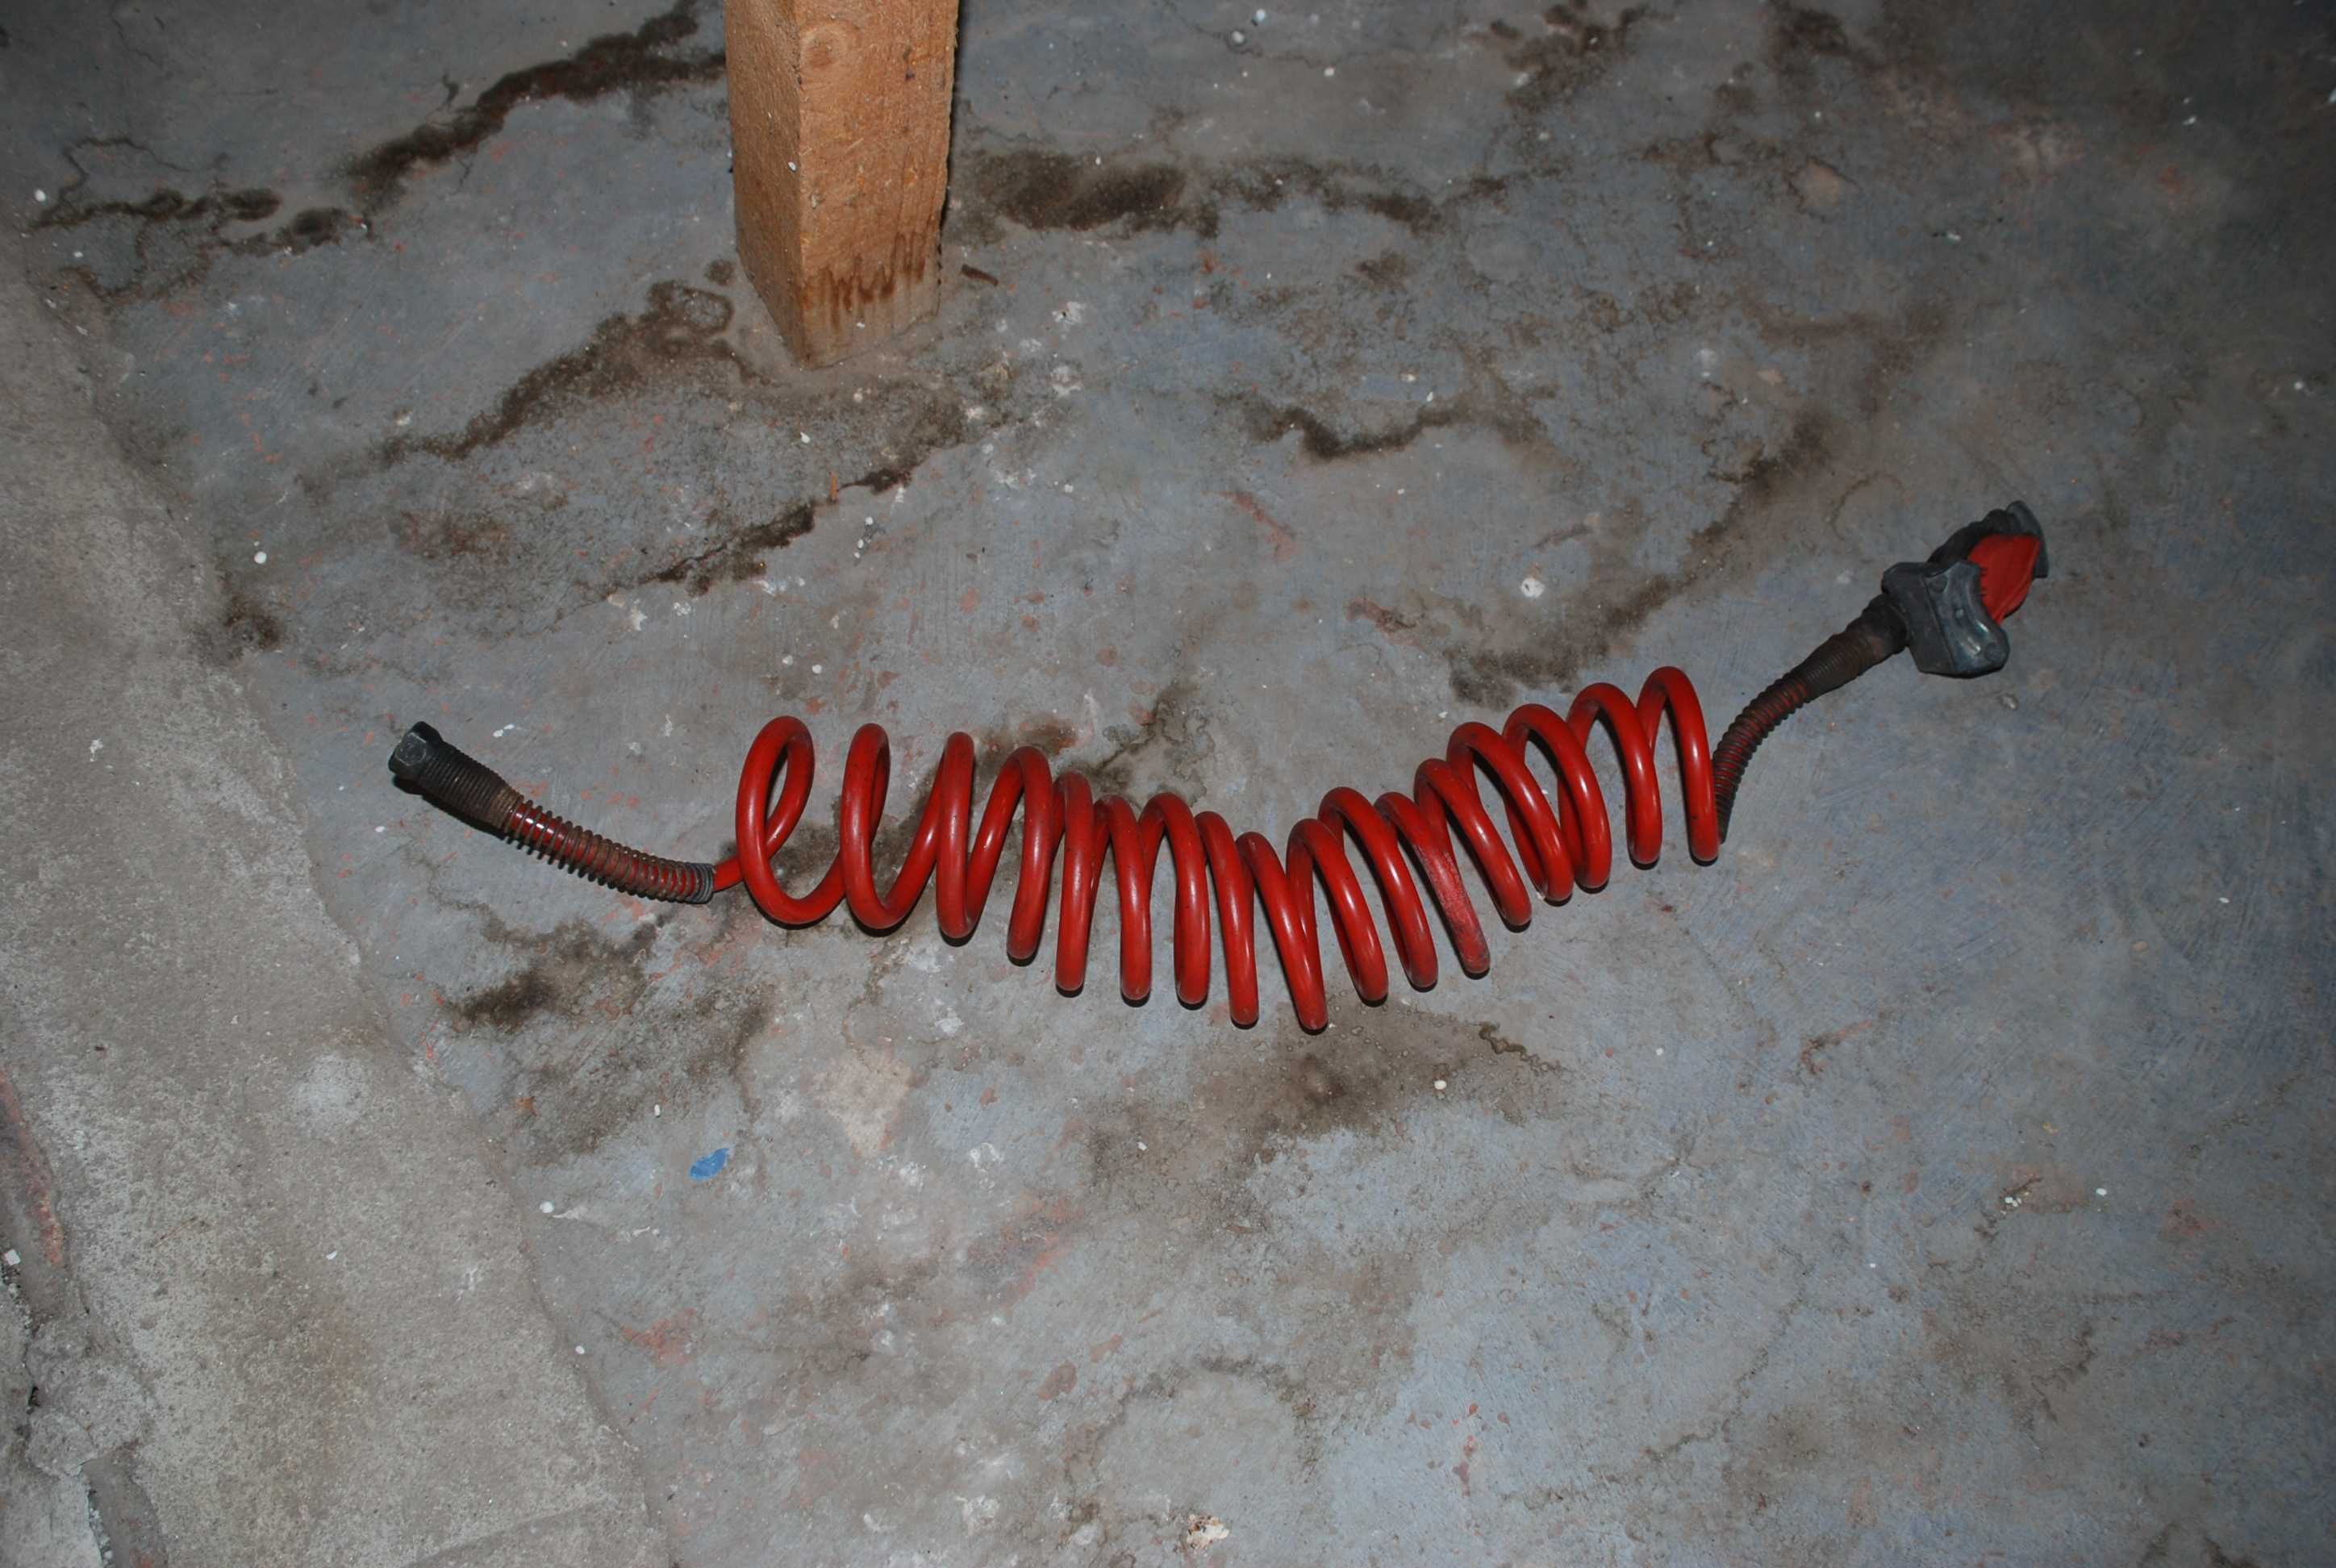 Cablu electric spiralat adaptor priza, auto15/7/7, mufa 7 / 24v,9 3.5m